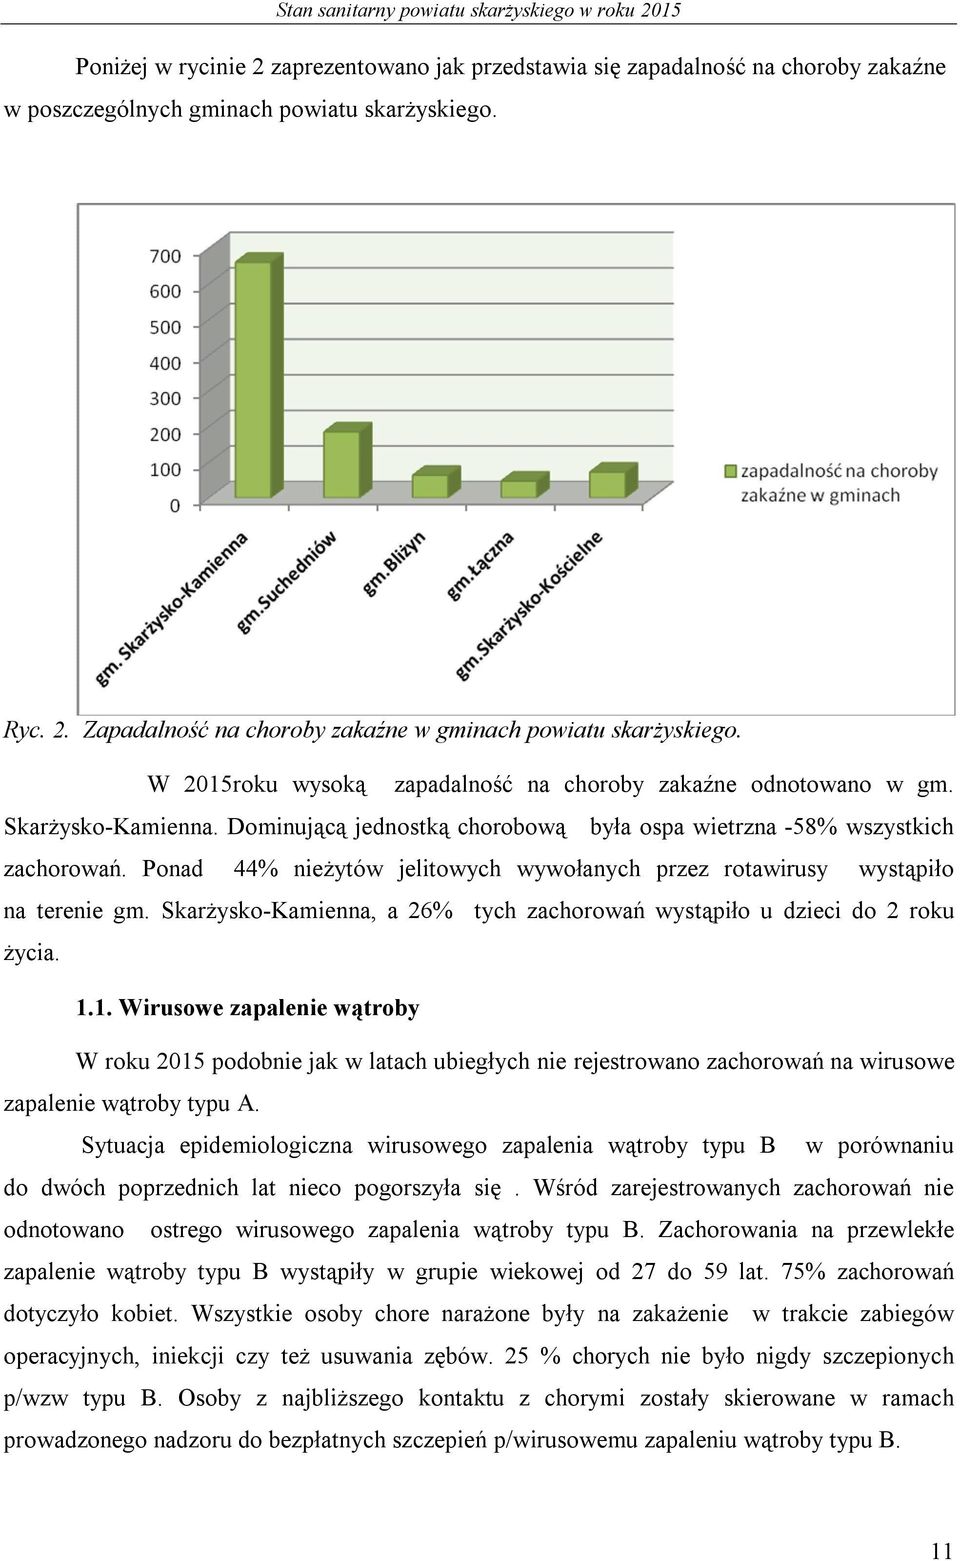 Ponad 44% nieżytów jelitowych wywołanych przez rotawirusy wystąpiło na terenie gm. Skarżysko-Kamienna, a 26% tych zachorowań wystąpiło u dzieci do 2 roku życia. 1.